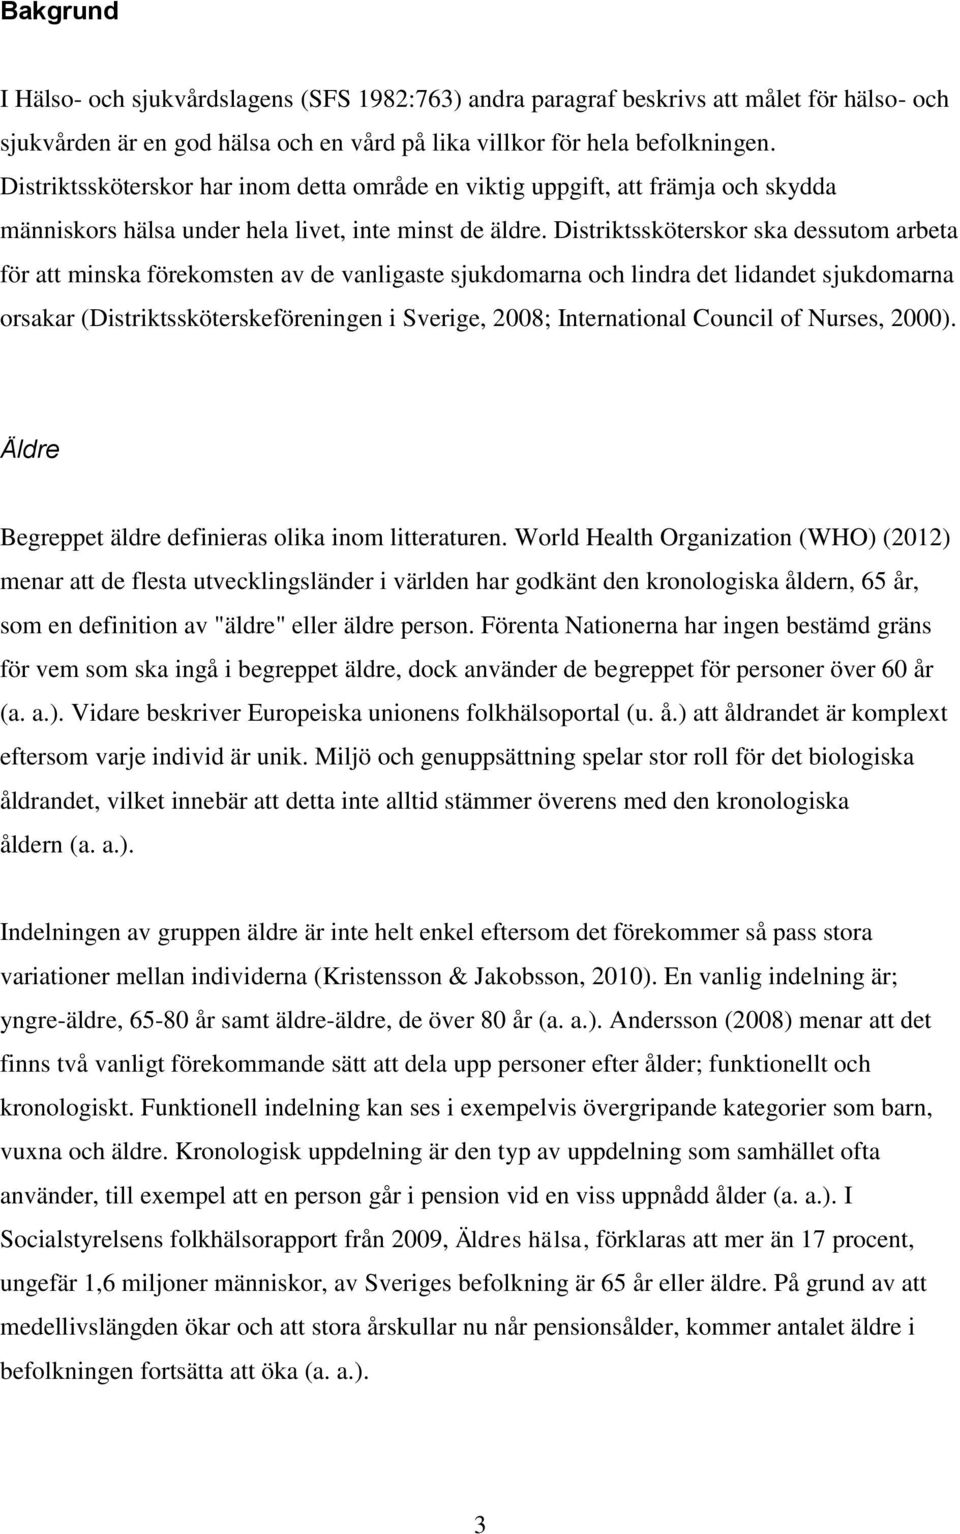 Distriktssköterskor ska dessutom arbeta för att minska förekomsten av de vanligaste sjukdomarna och lindra det lidandet sjukdomarna orsakar (Distriktssköterskeföreningen i Sverige, 2008;